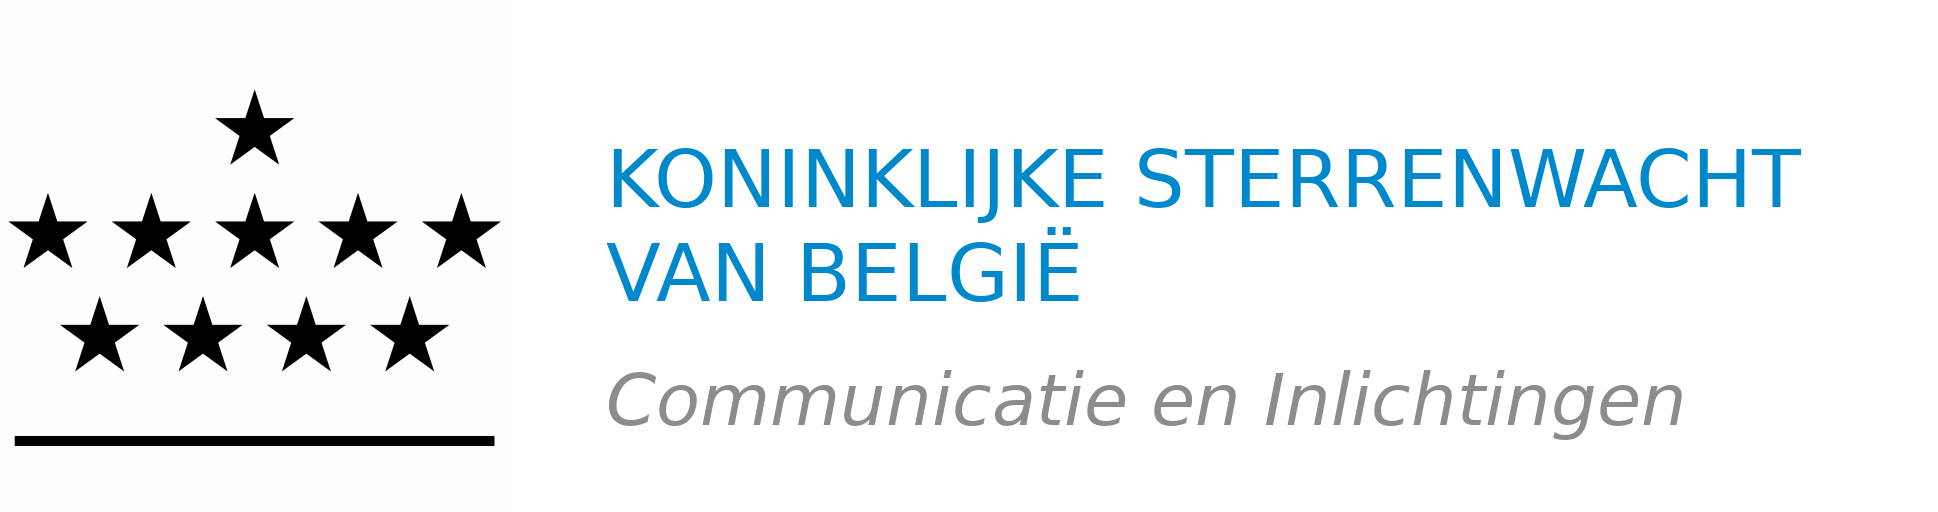 Koninklijke Sterrenwacht van België – Communicatie en Inlichtingen